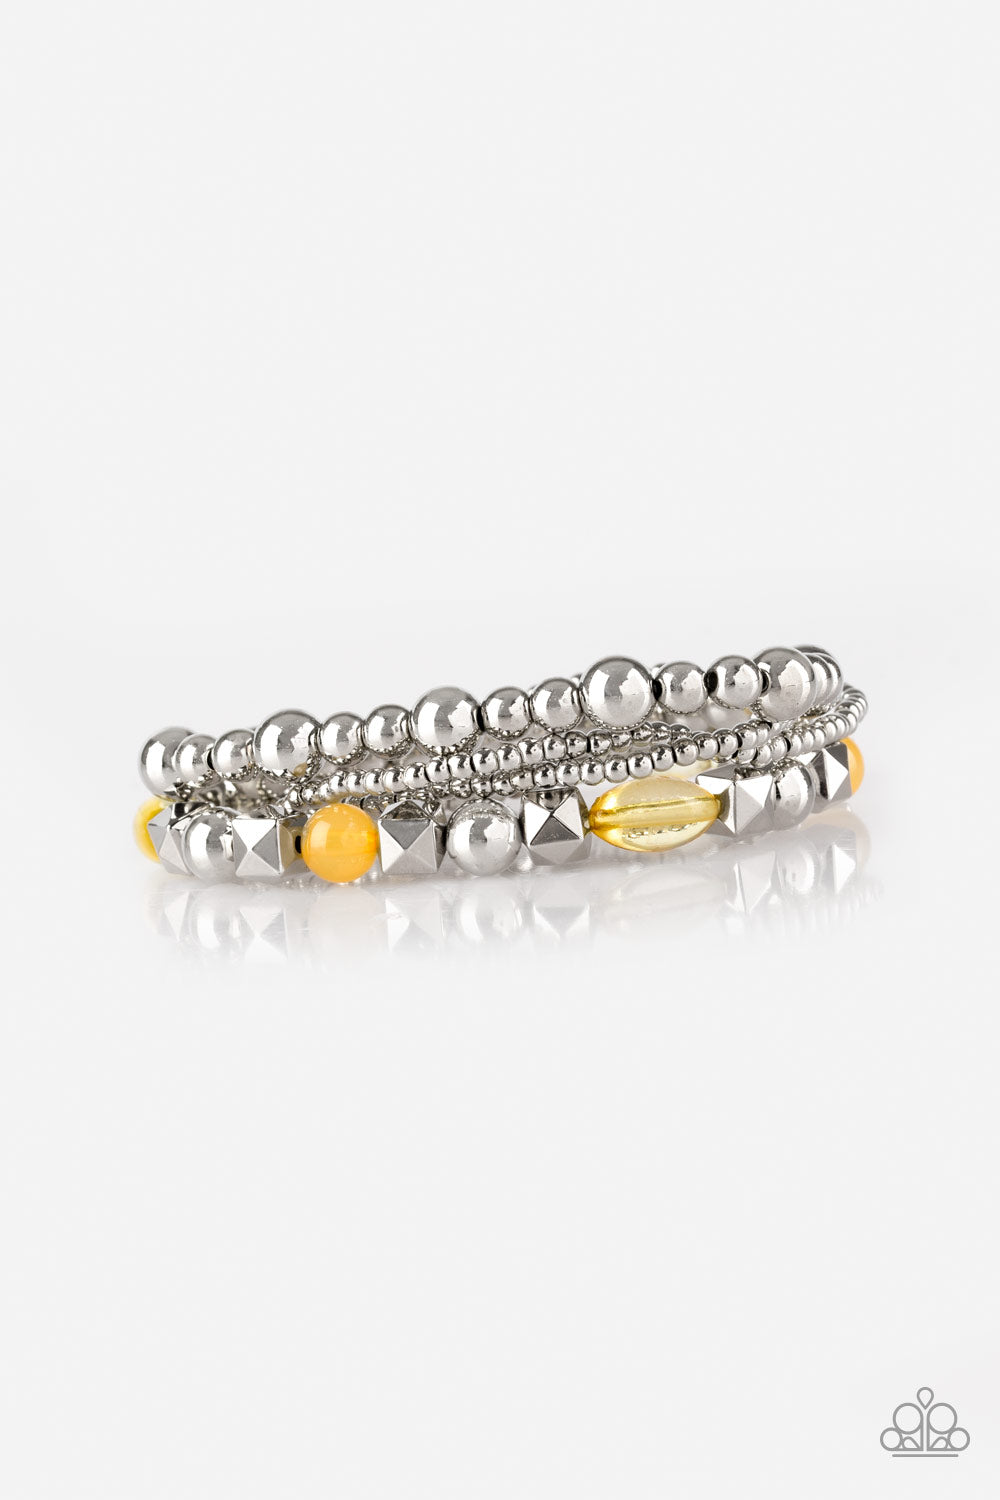 Babe-alicious - Yellow bracelet